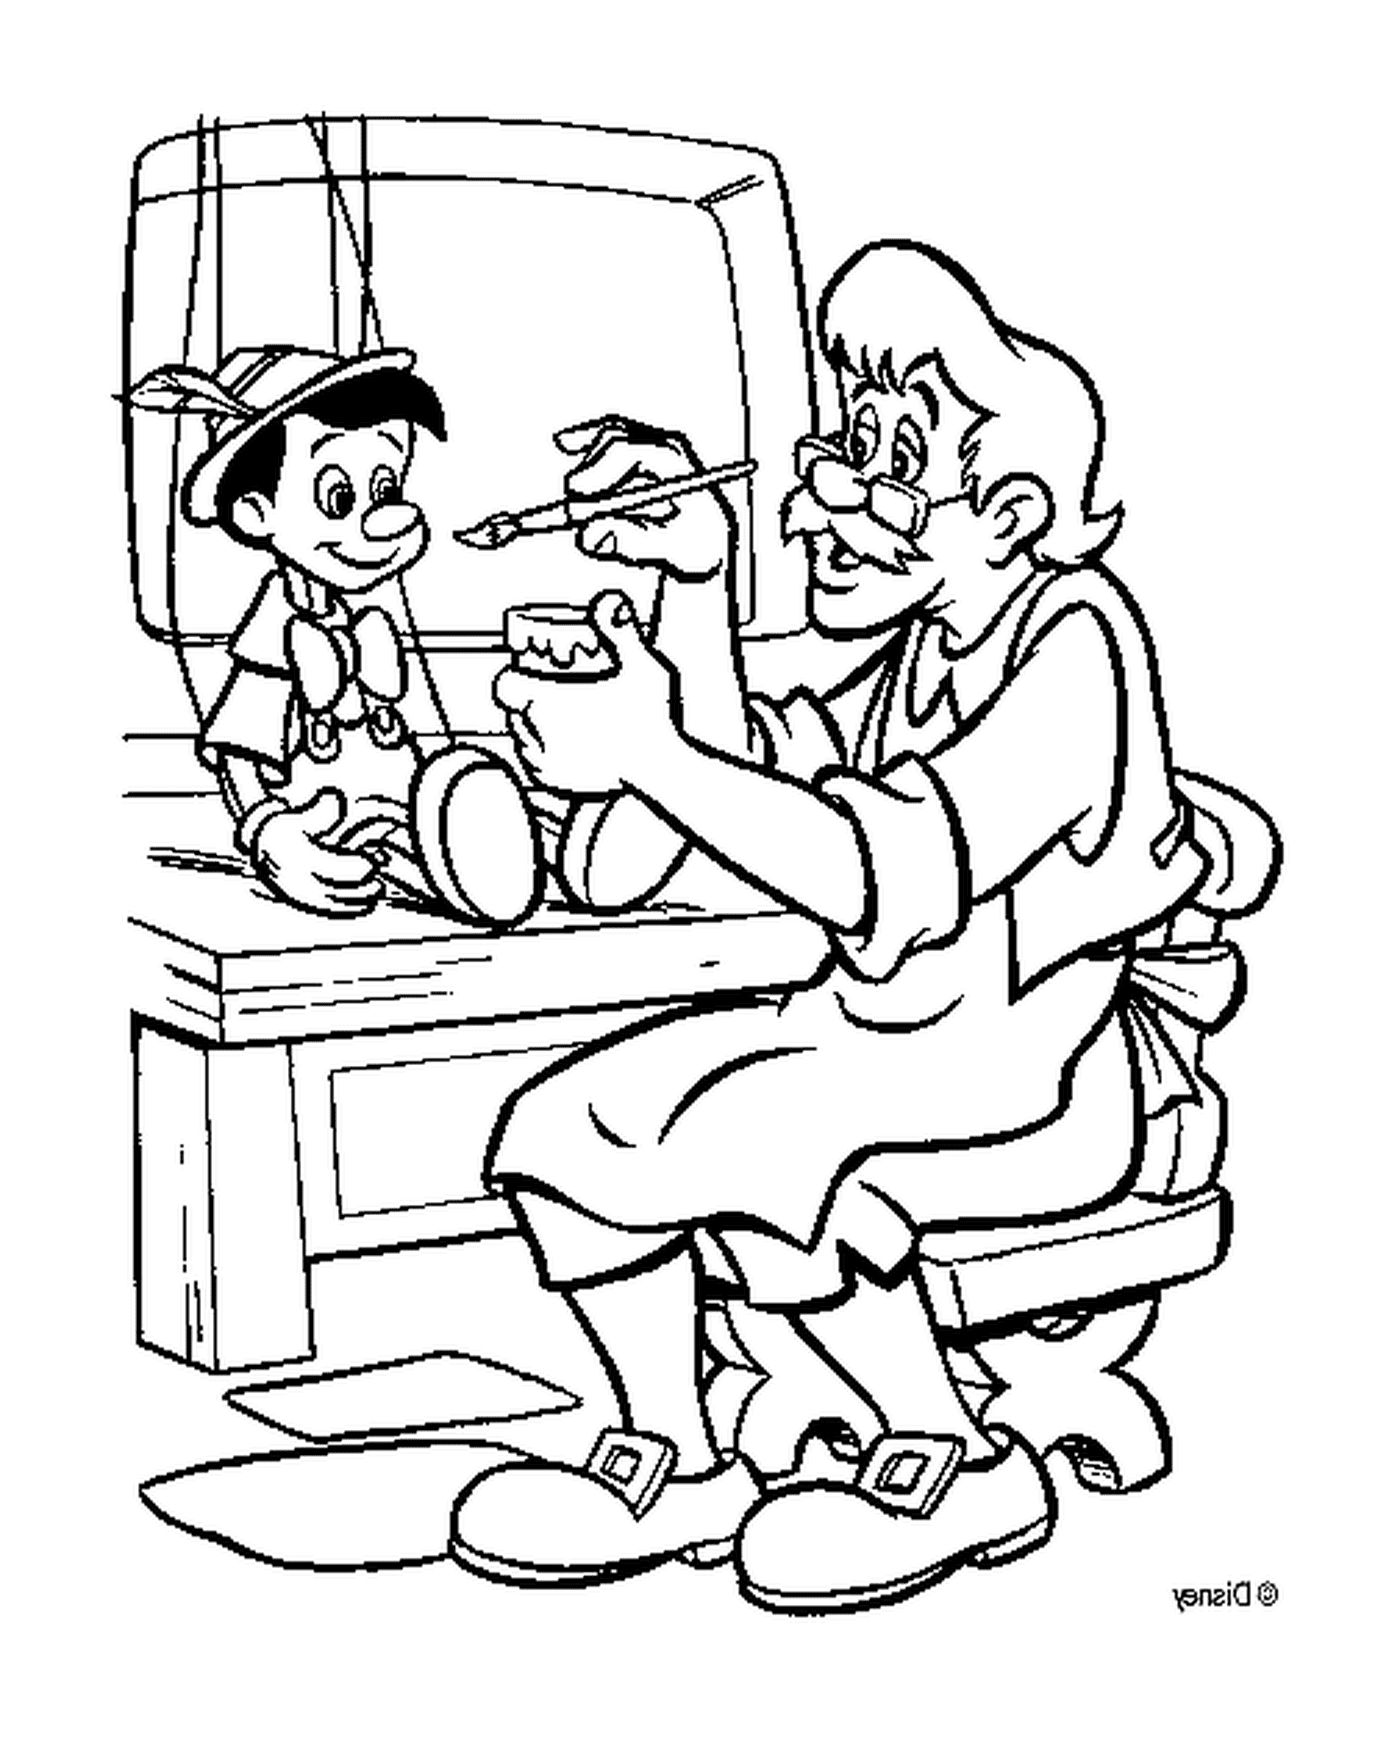 Geppetto fabrique Pinocchio dans son atelier